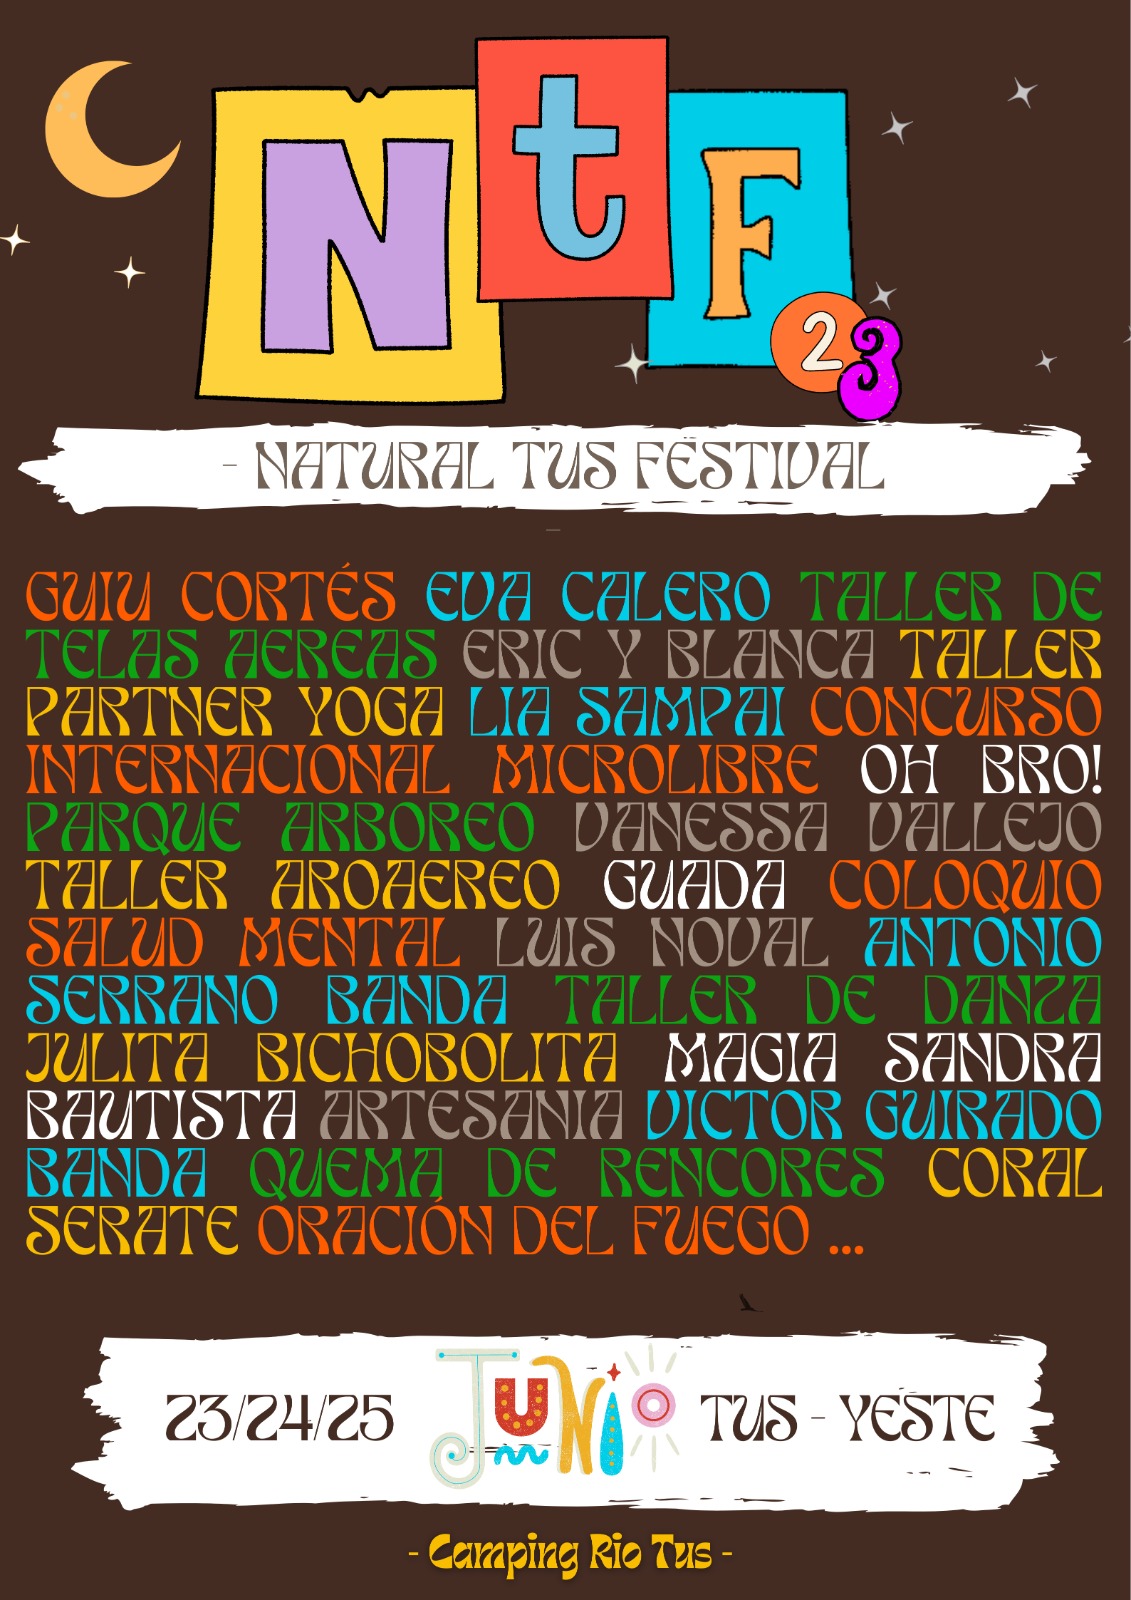 Calendario de Actuaciones del Natural Tus Festival 2022 en Yeste